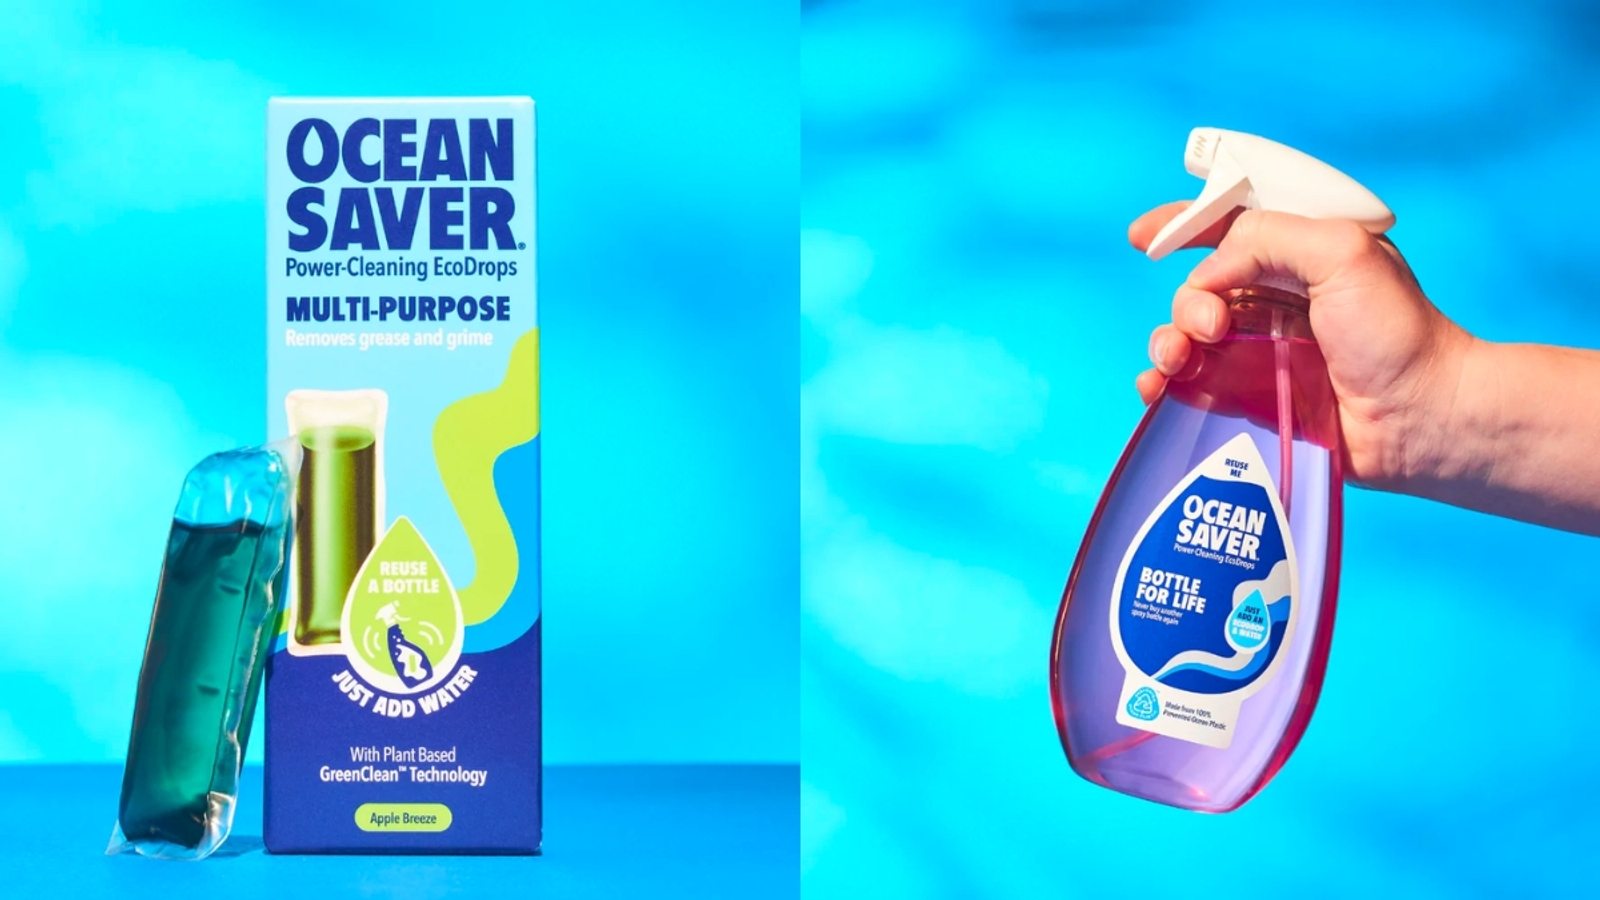 Ocean Saver product photos